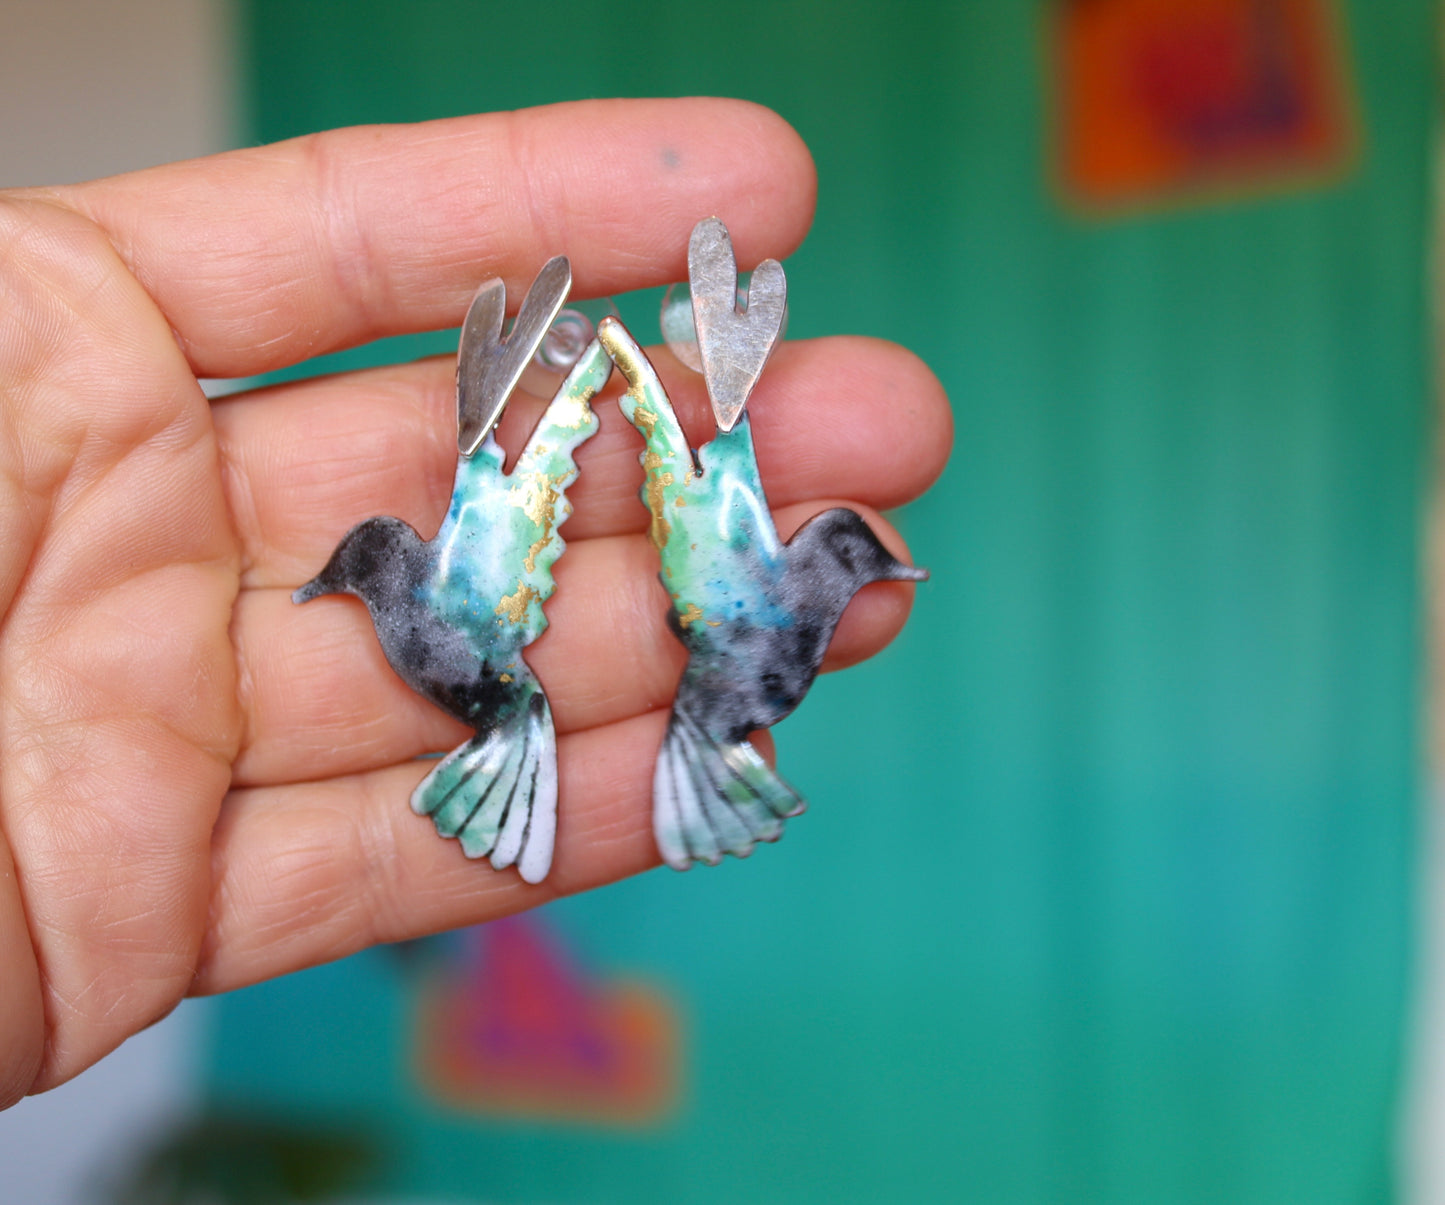 Aros colibrí